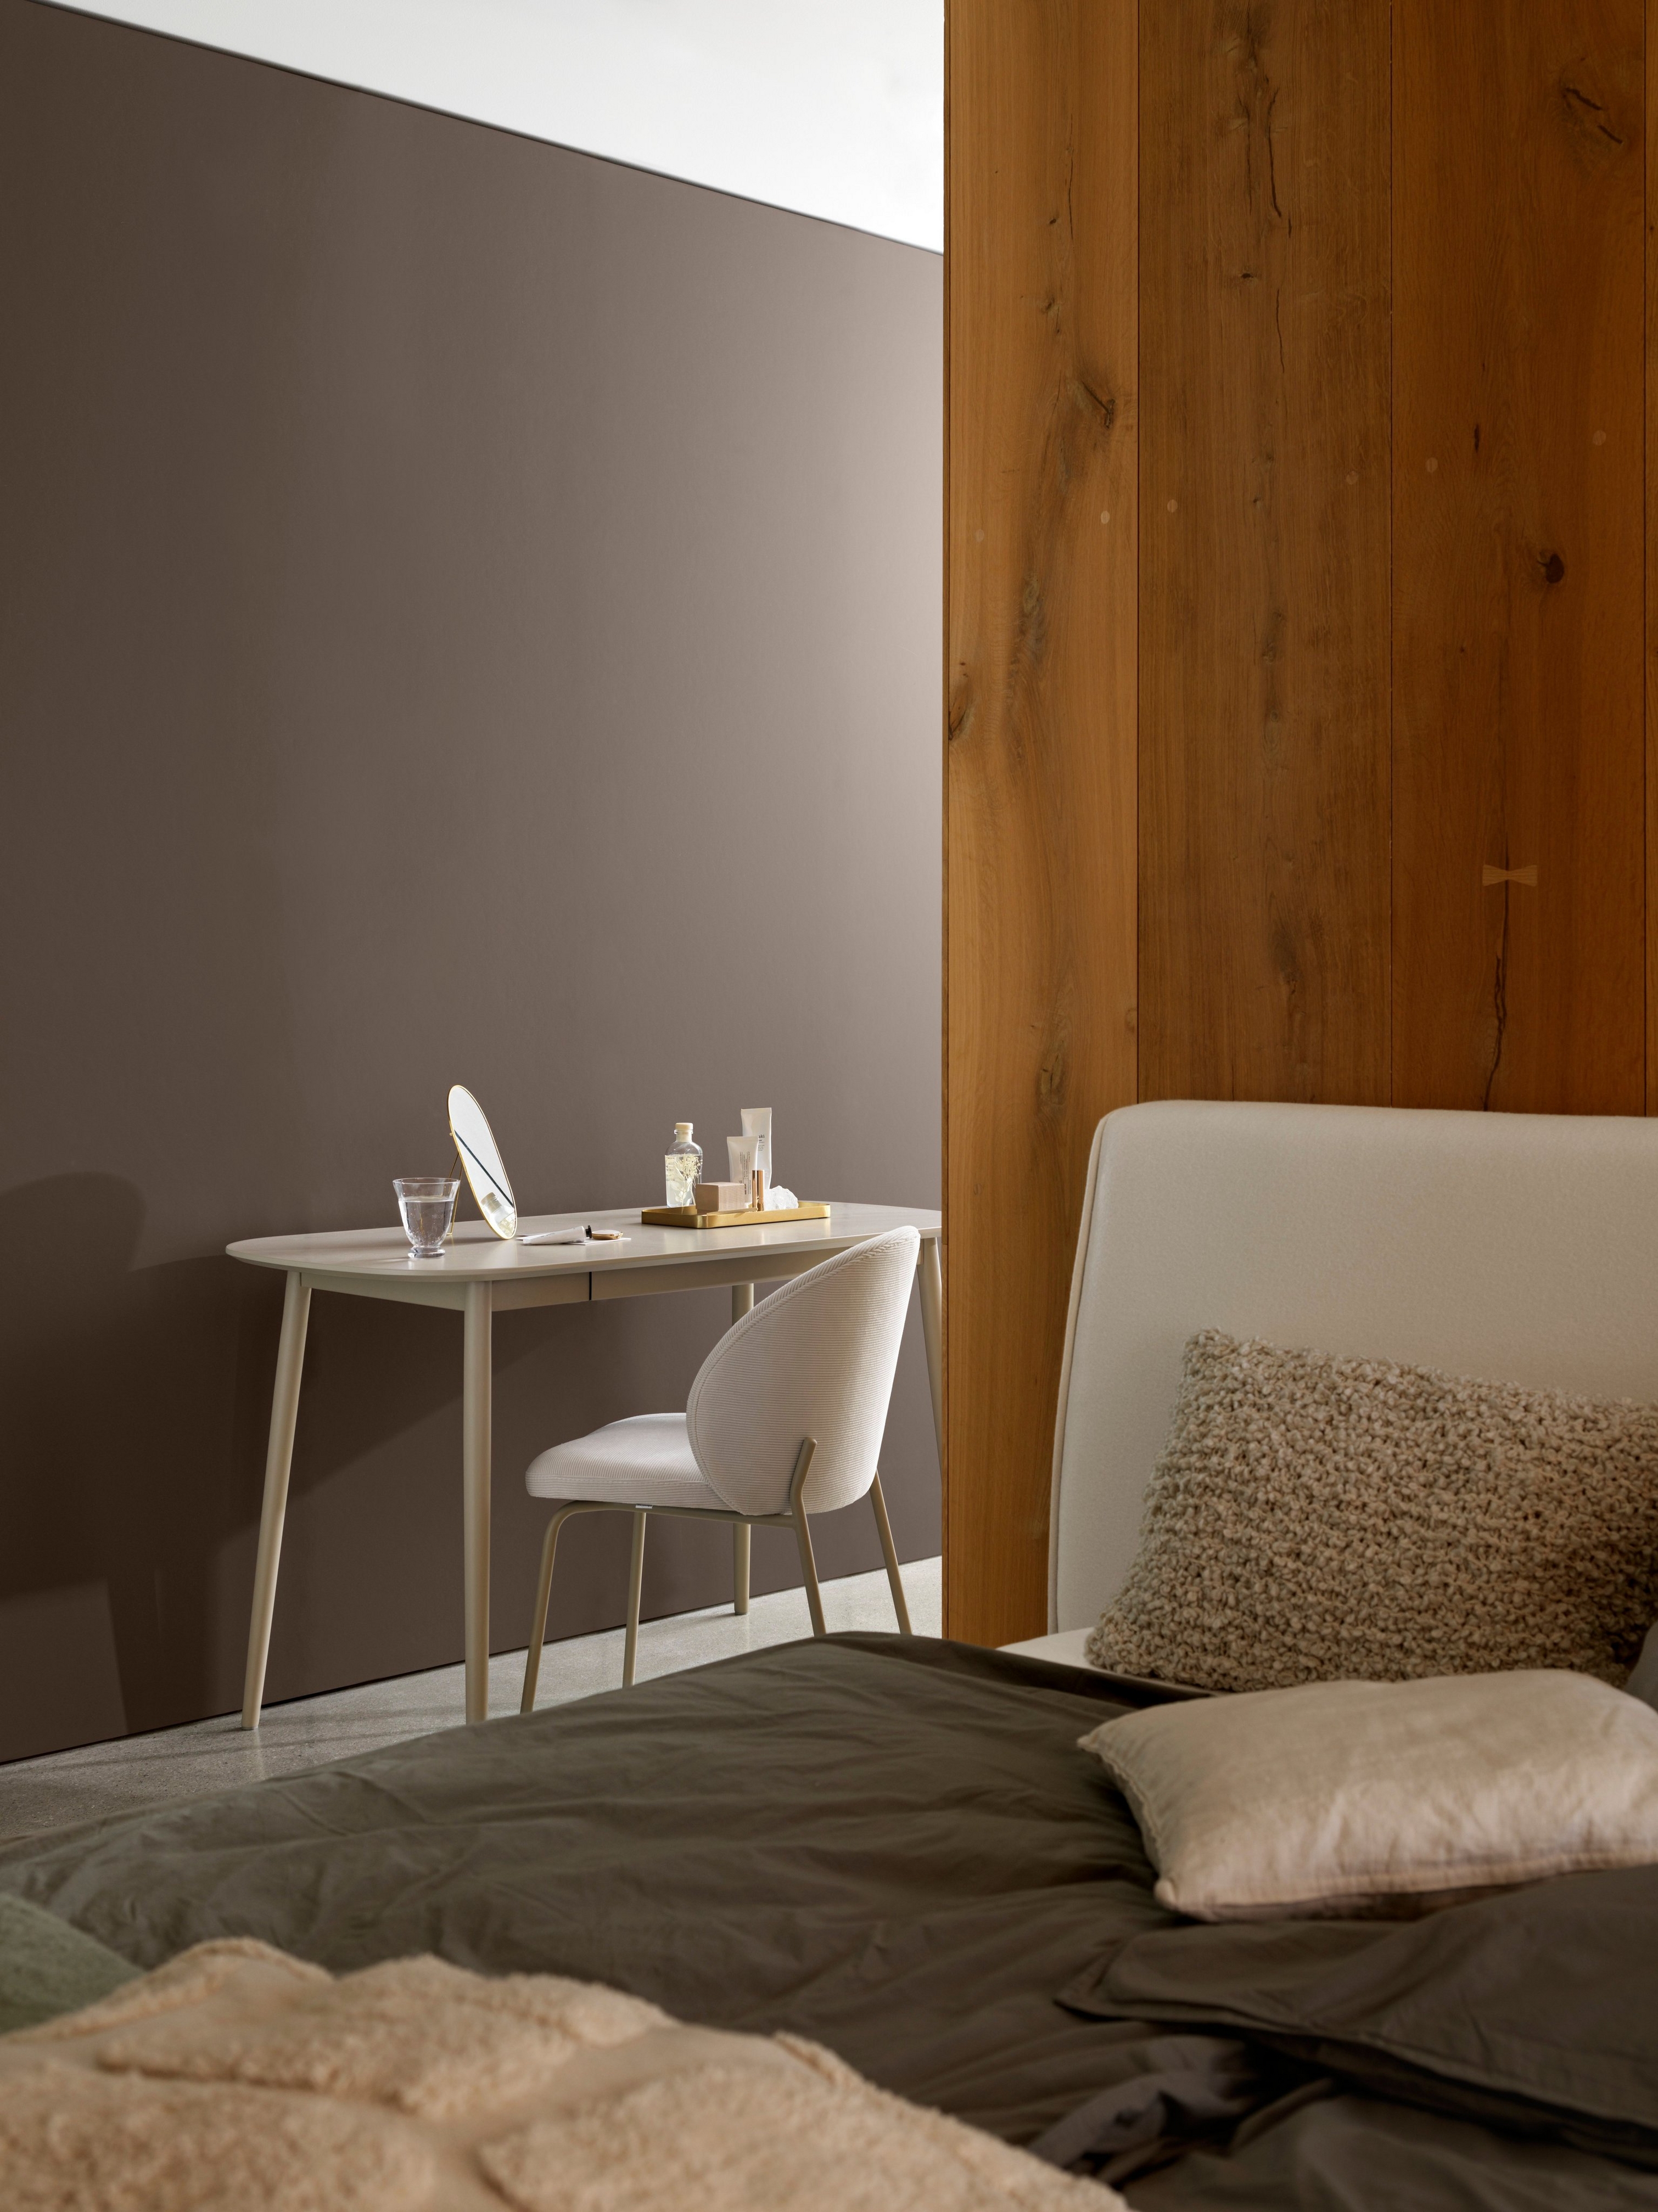 Уголок спальни с минималистичным письменным столом, стулом и уютной постелью рядом с деревянной панелью.